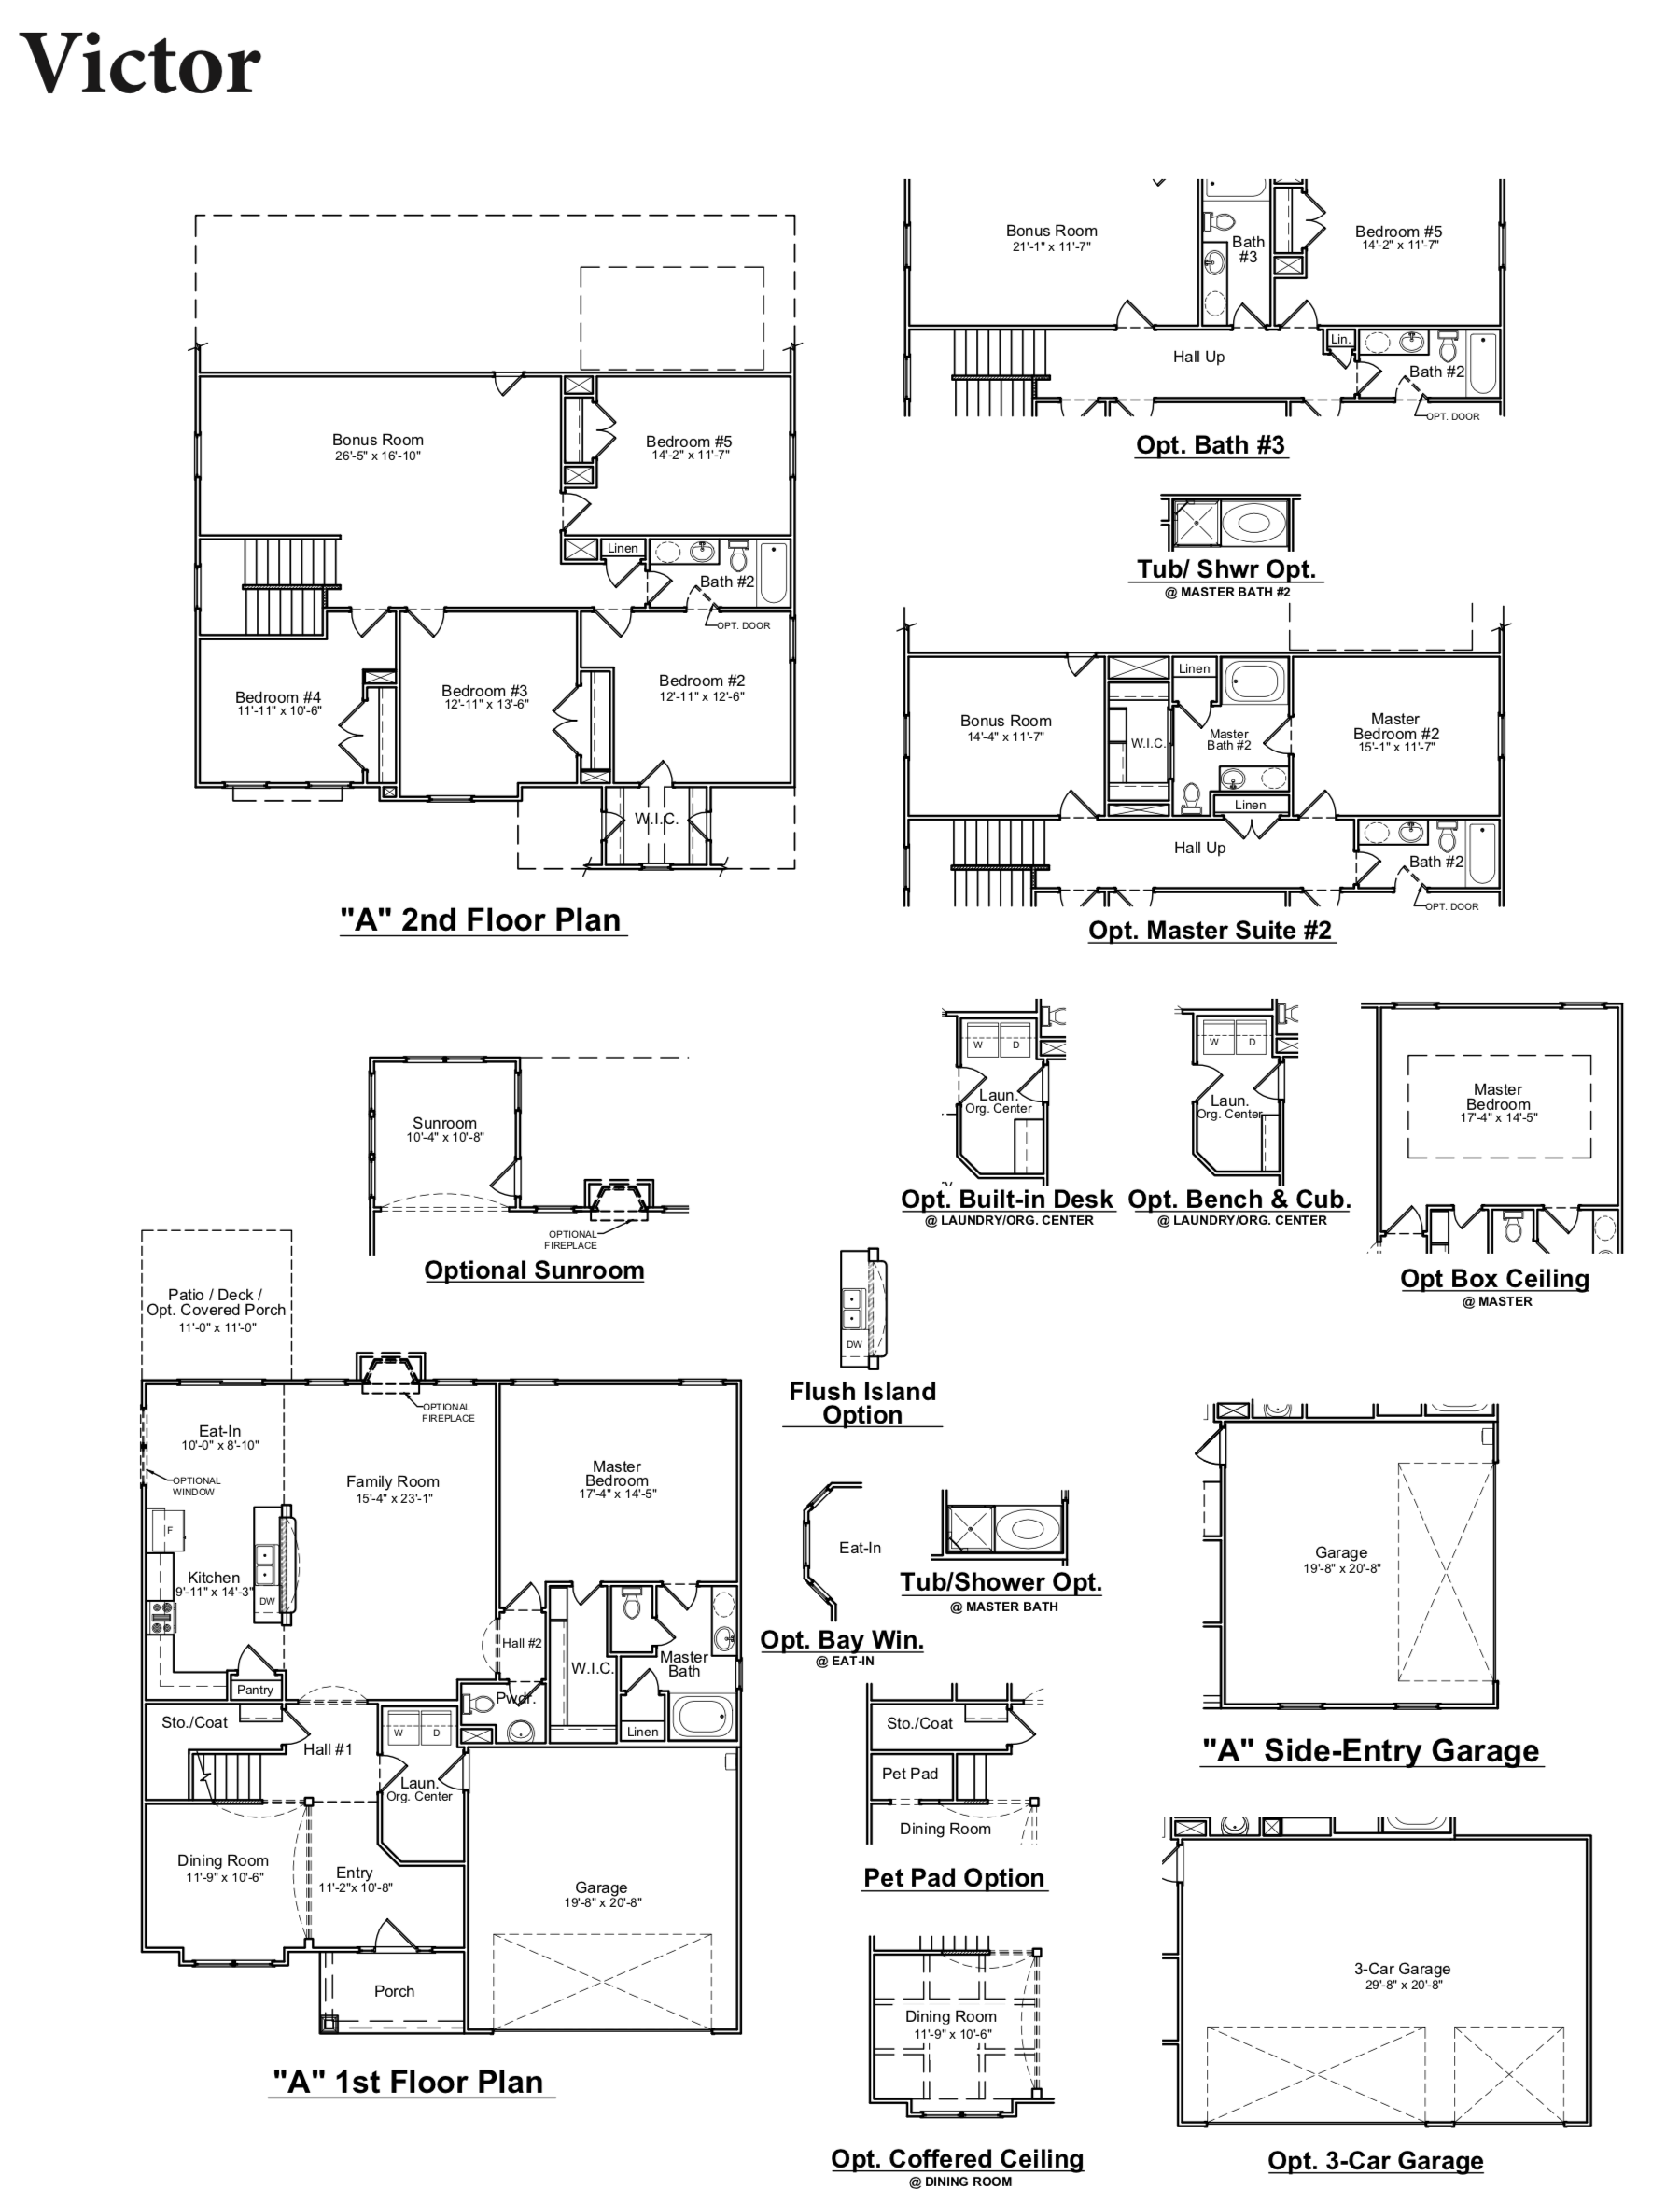 Victor floor plan image